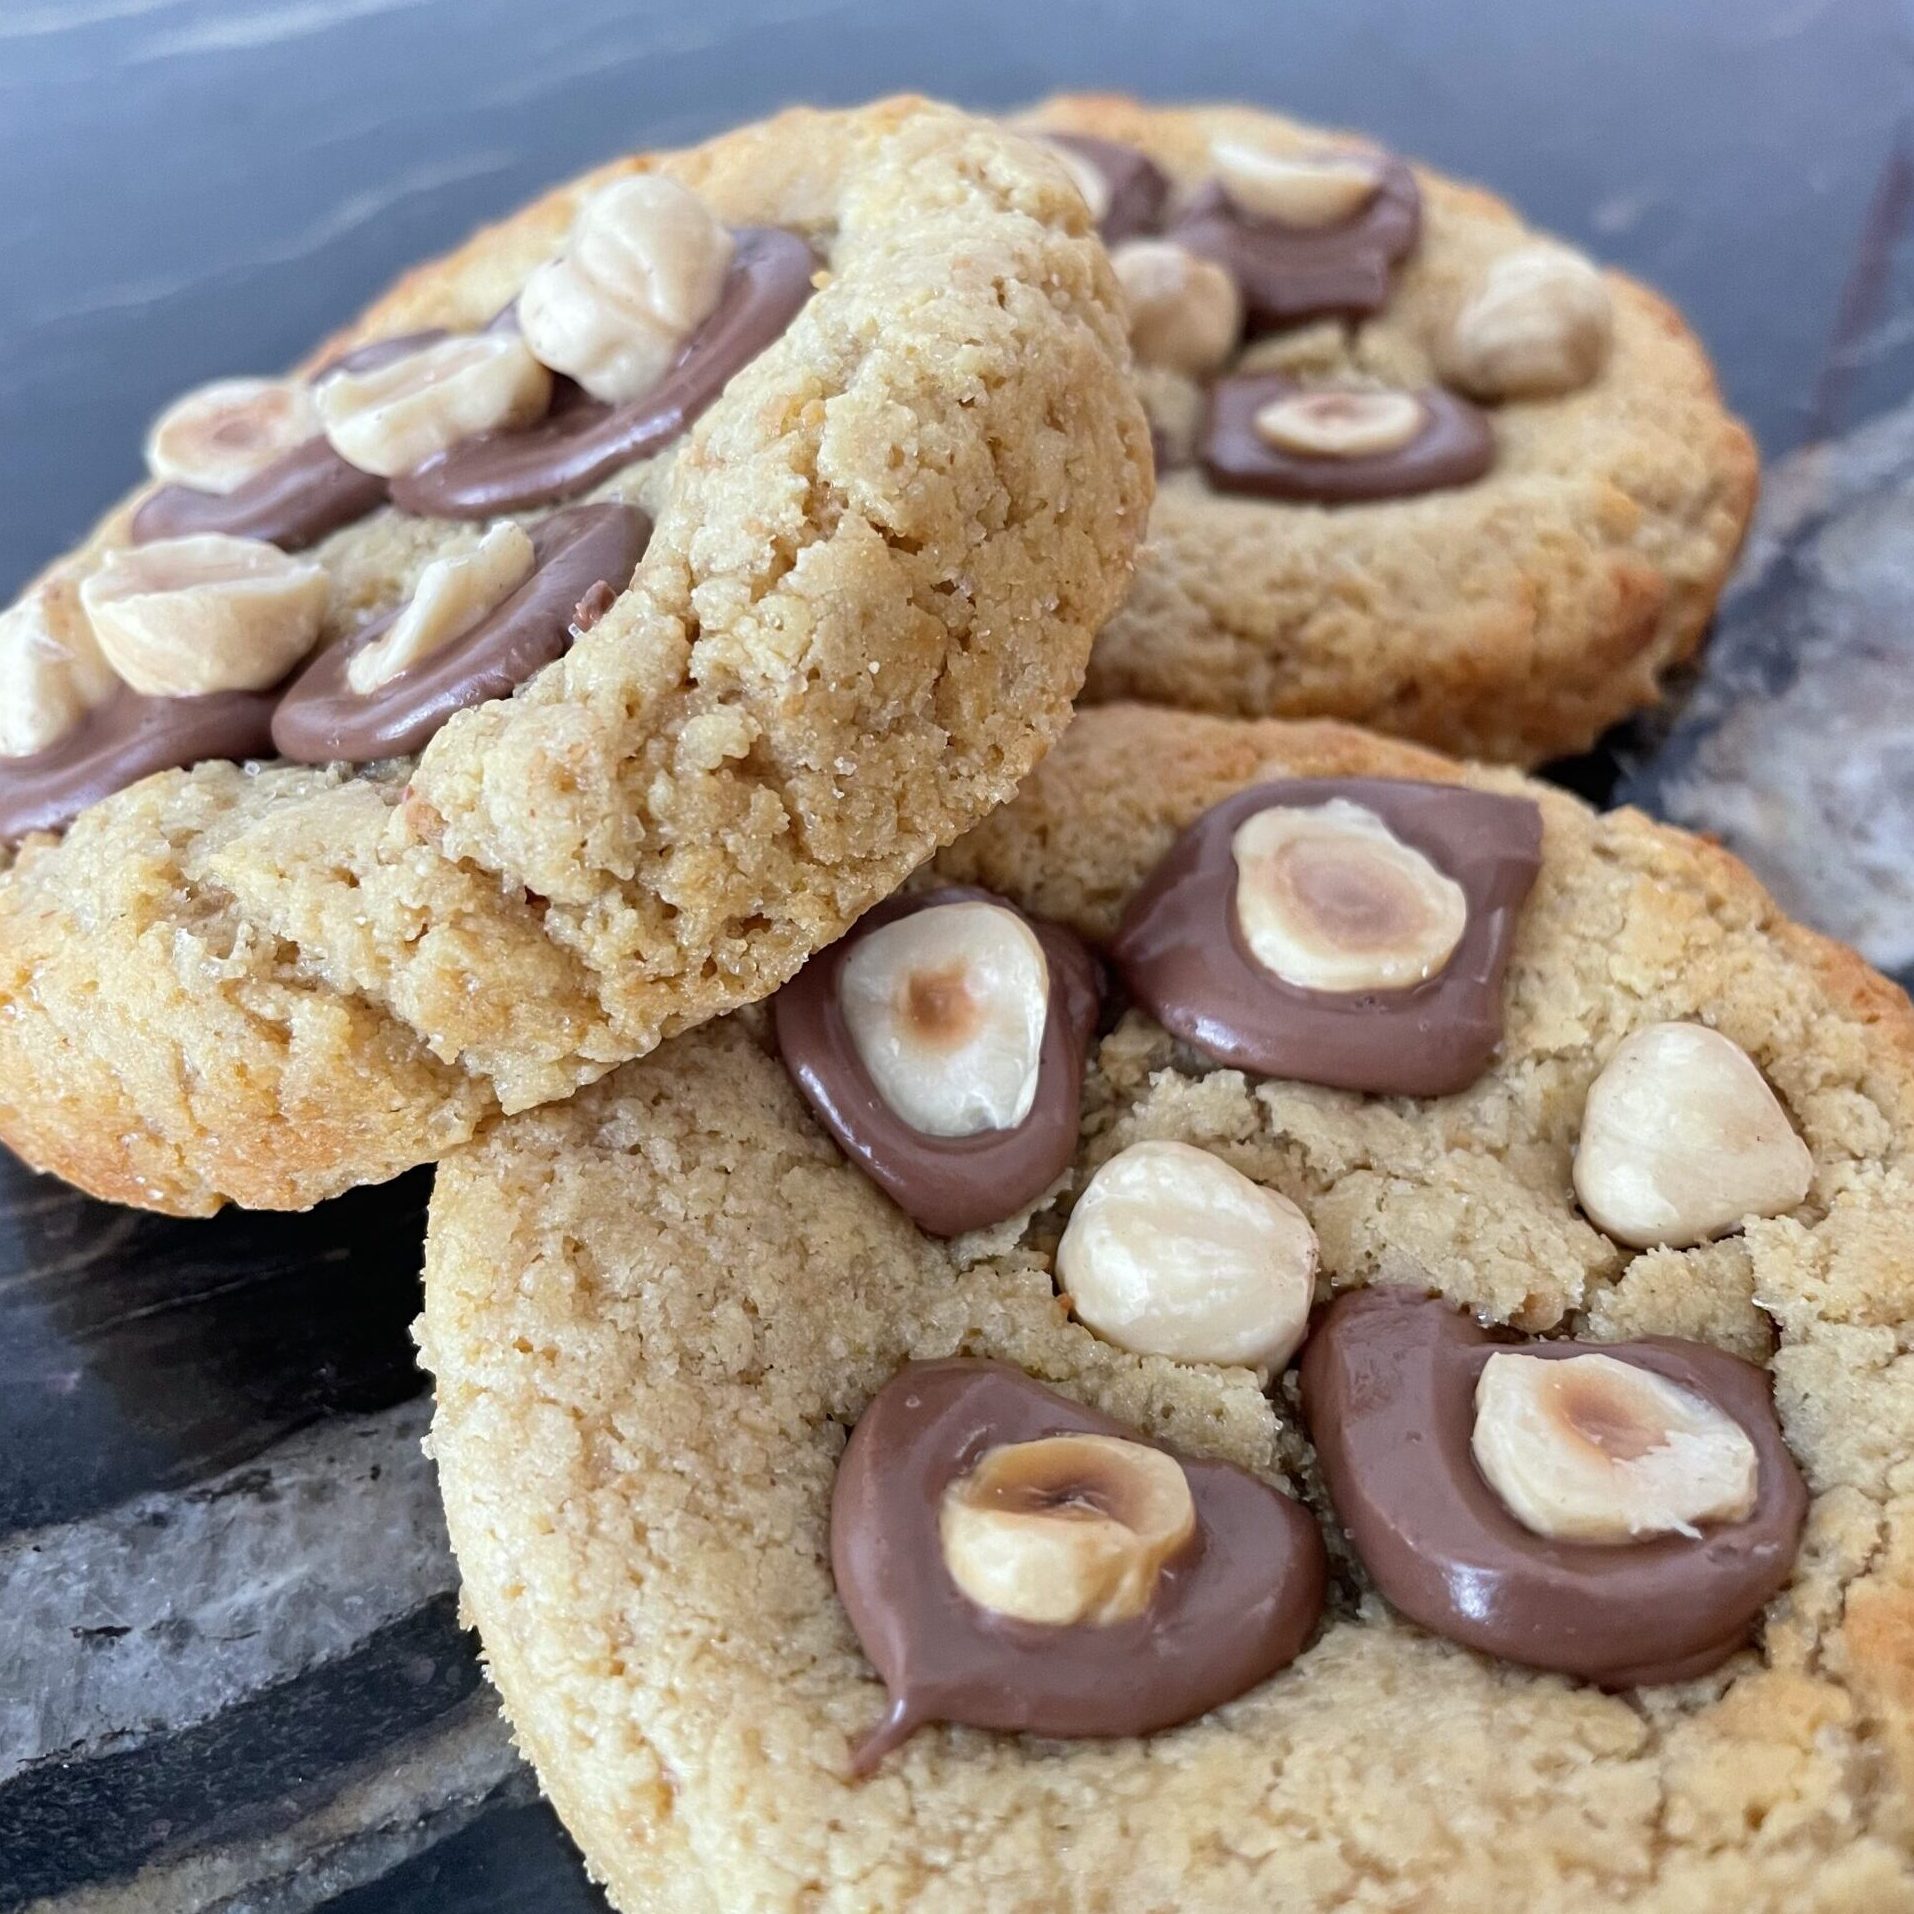 Cookie protéiné chocolat noir & noix & graine de courge - Maury